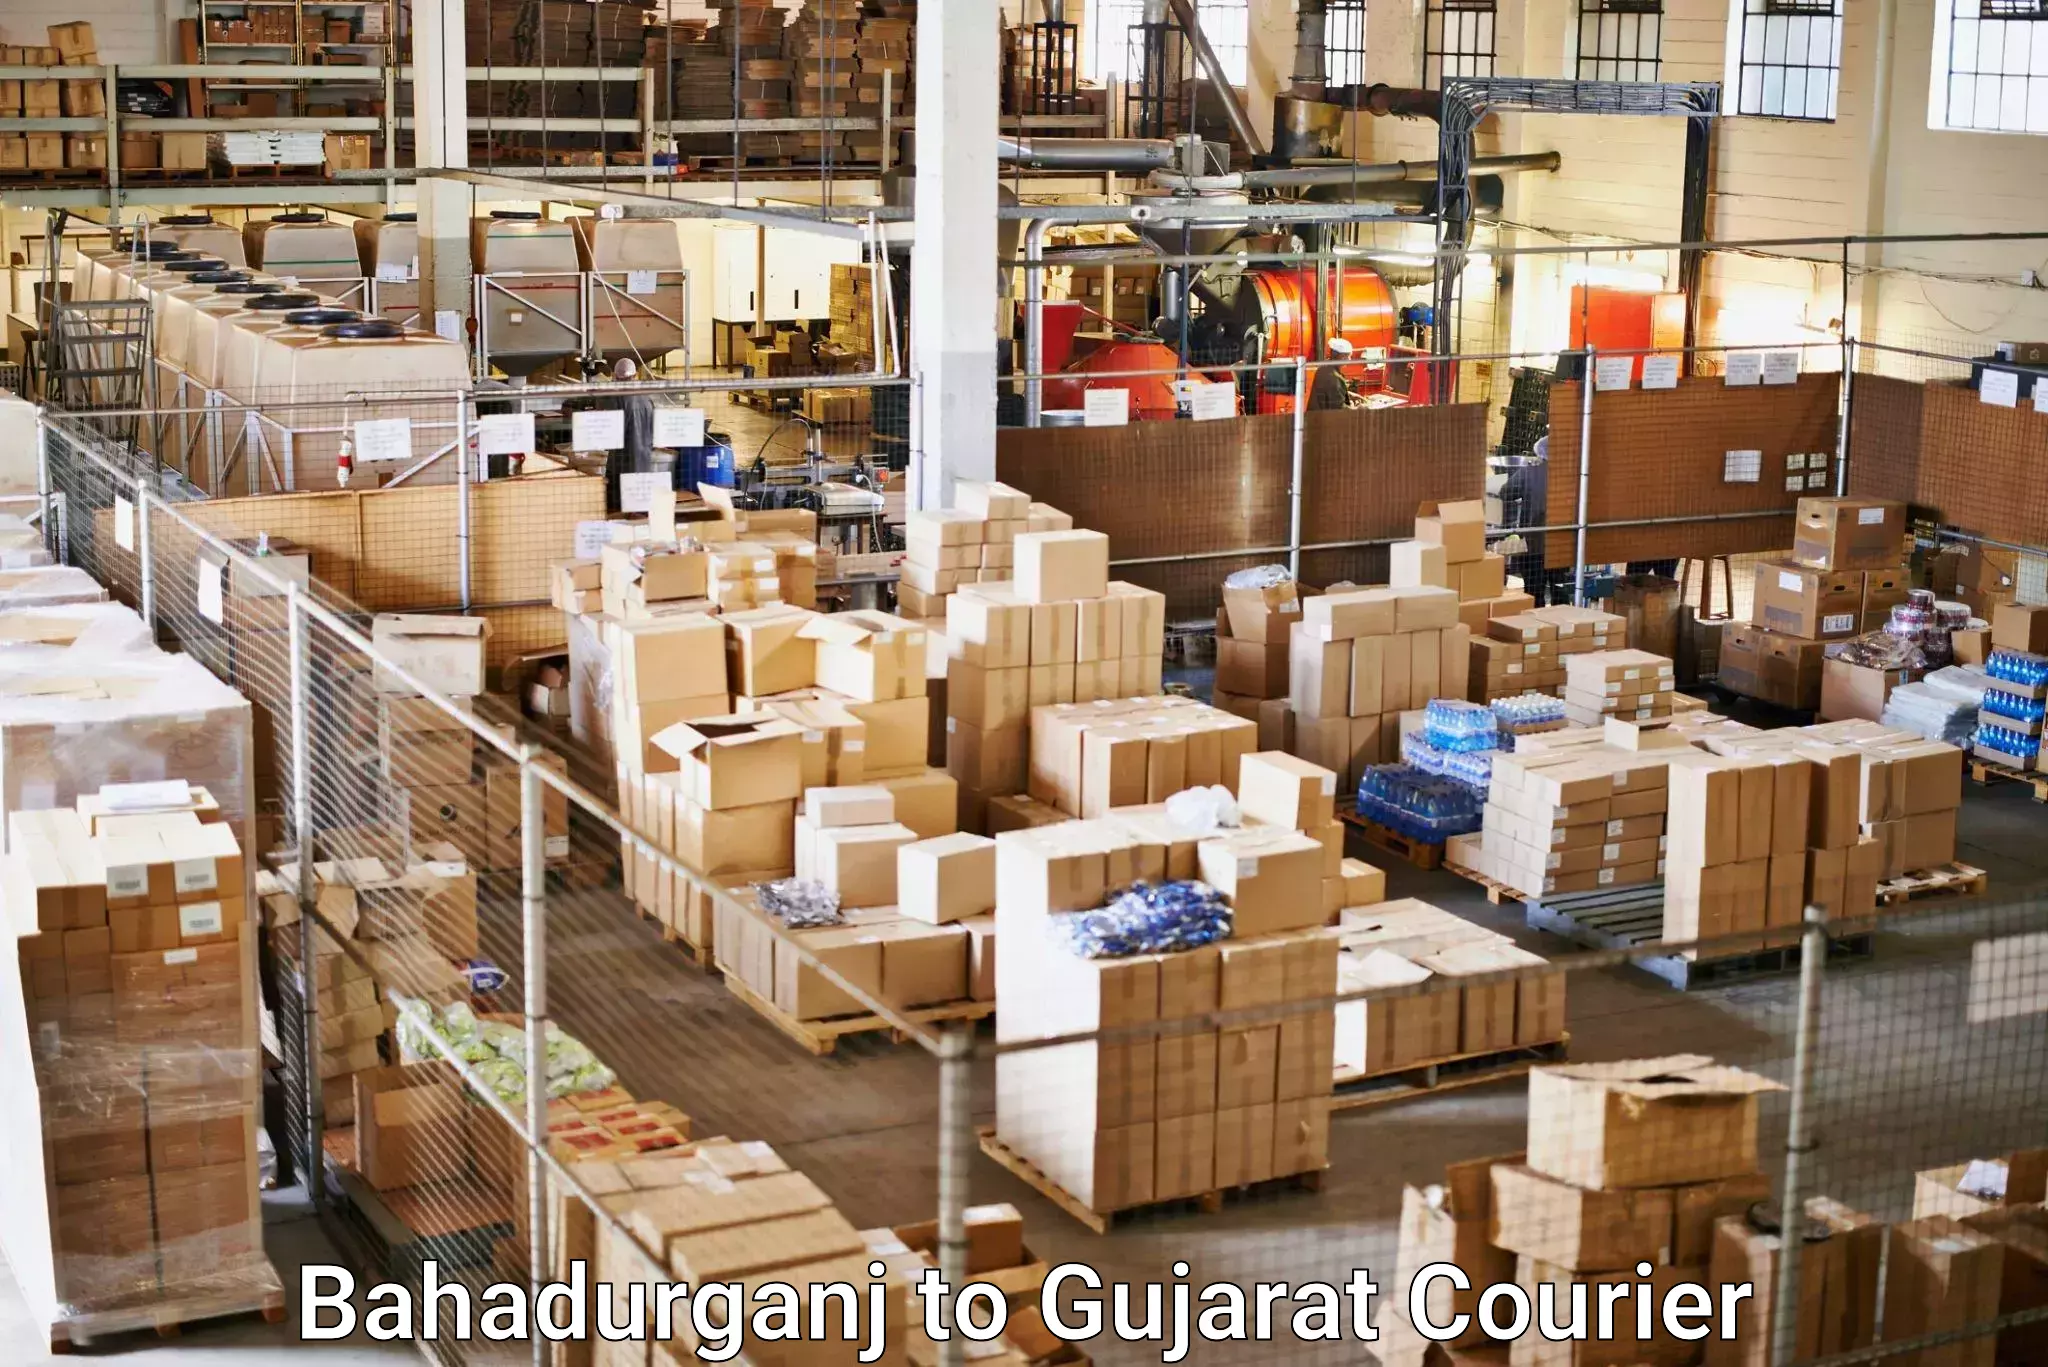 Courier app Bahadurganj to Gujarat